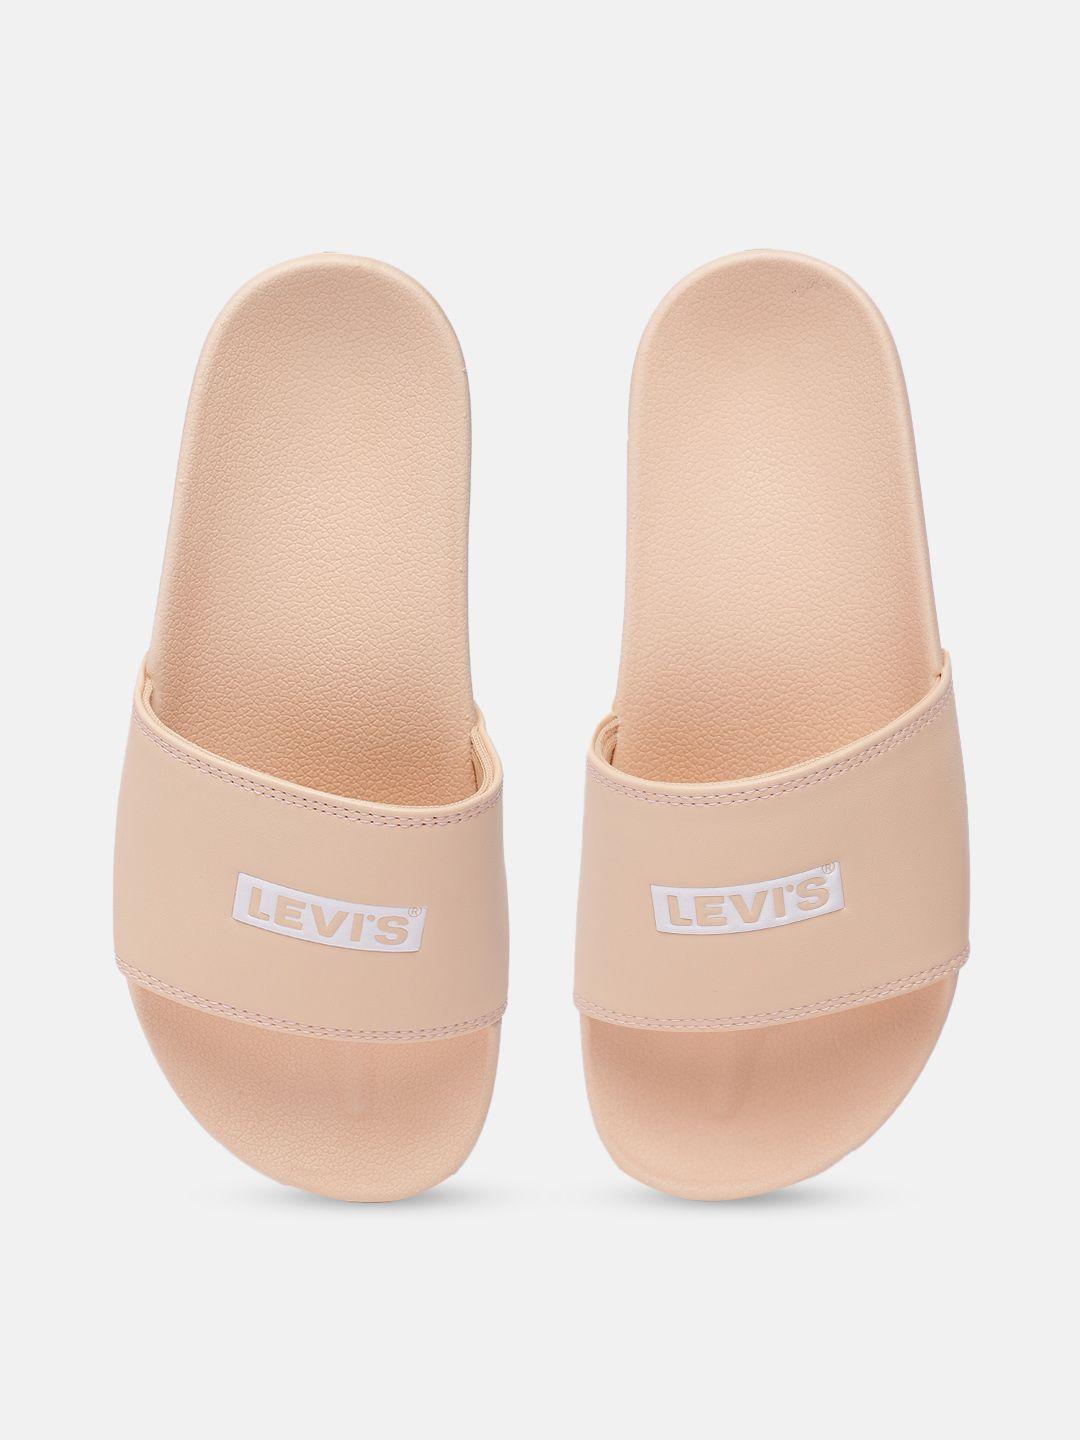 levis-women-beige-printed-sliders